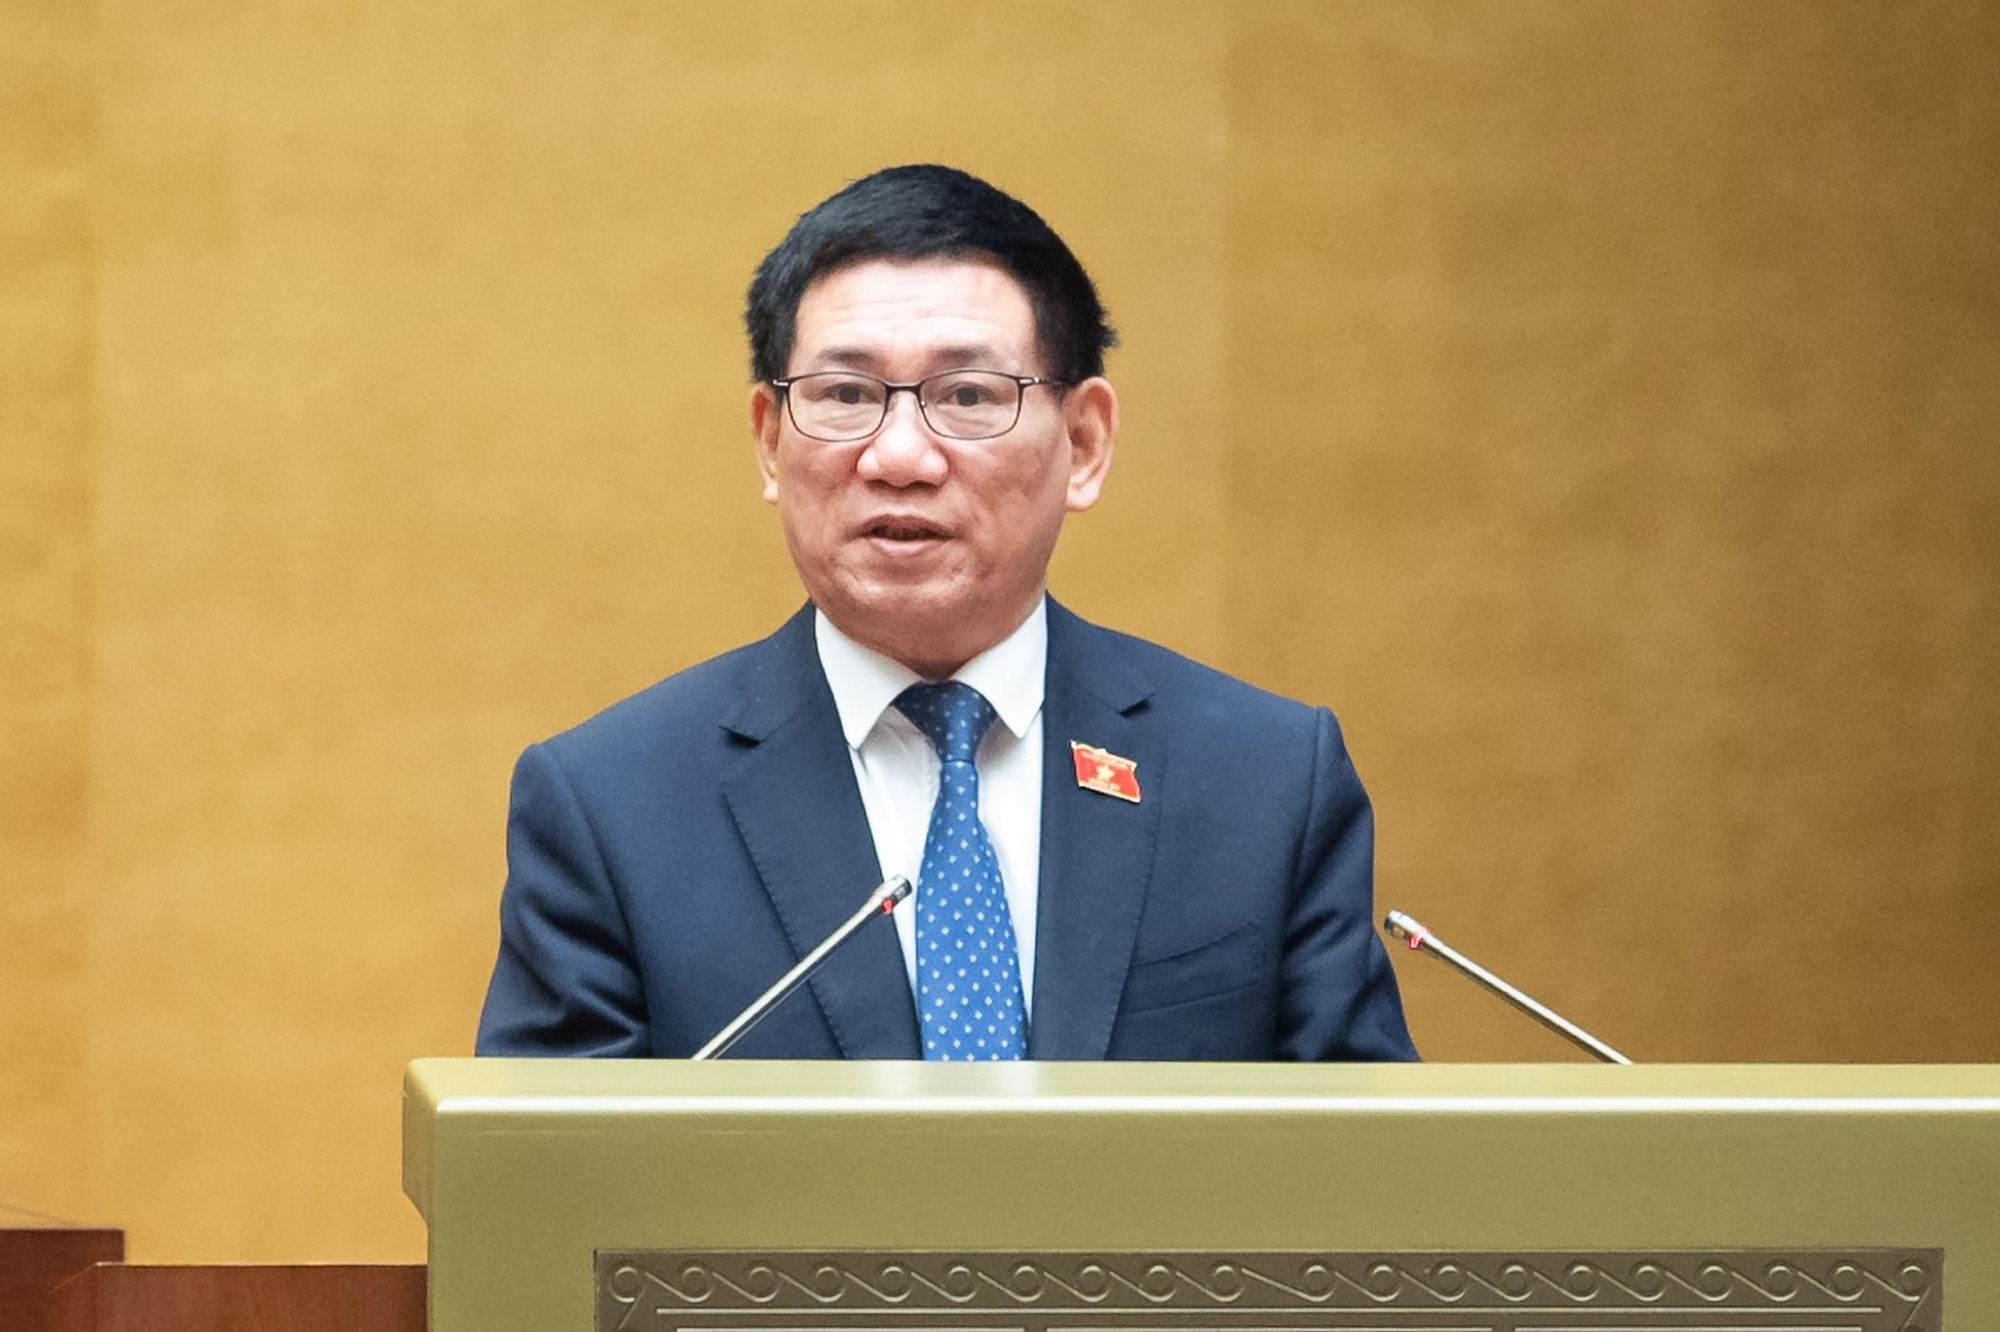 Bộ trưởng Bộ Tài chính Hồ Đức Phớc - Ảnh: Quochoi.vn